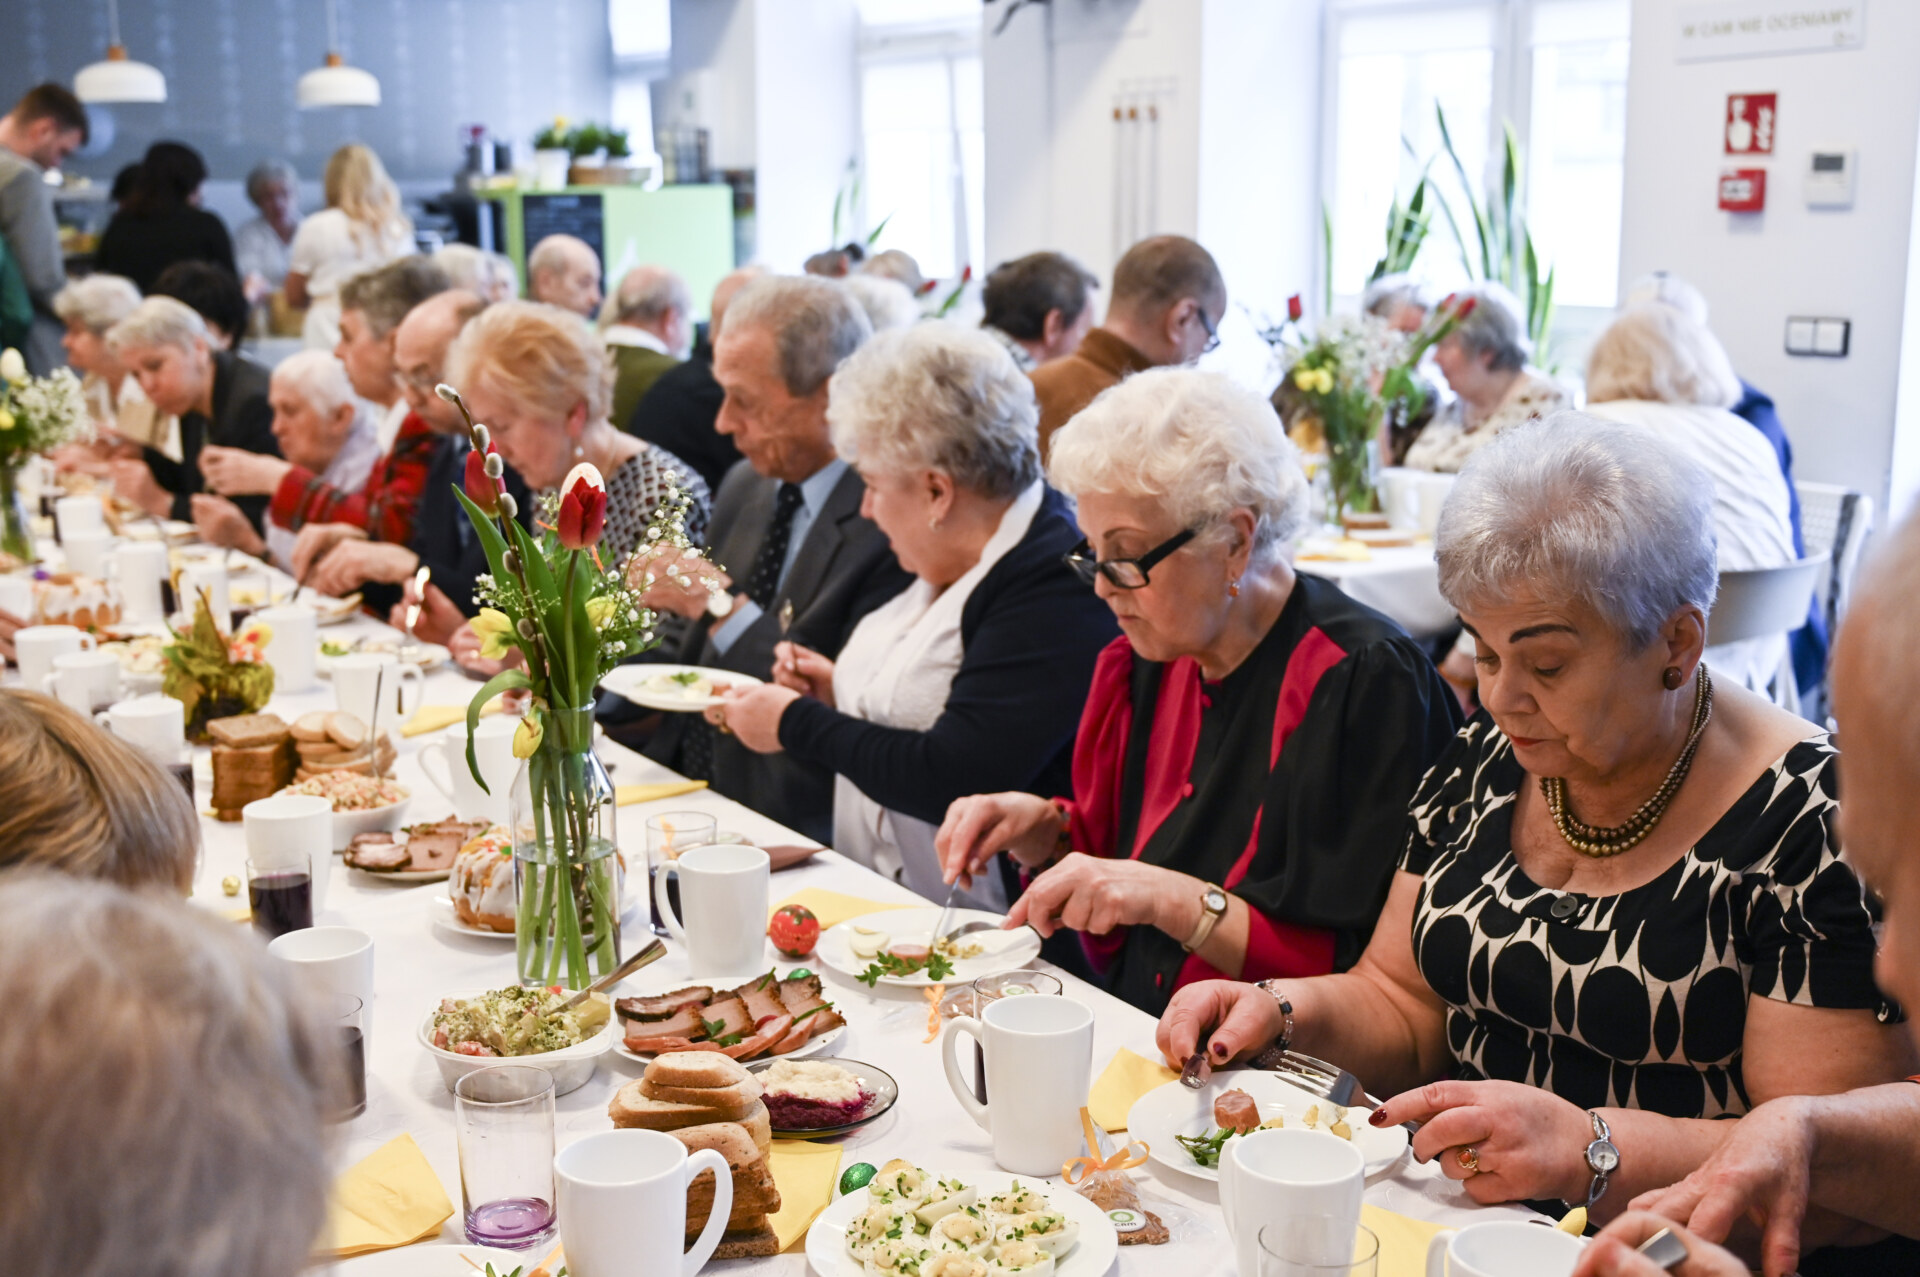 Grupa seniorów je obiad przy wspólnym, świątecznym stole.